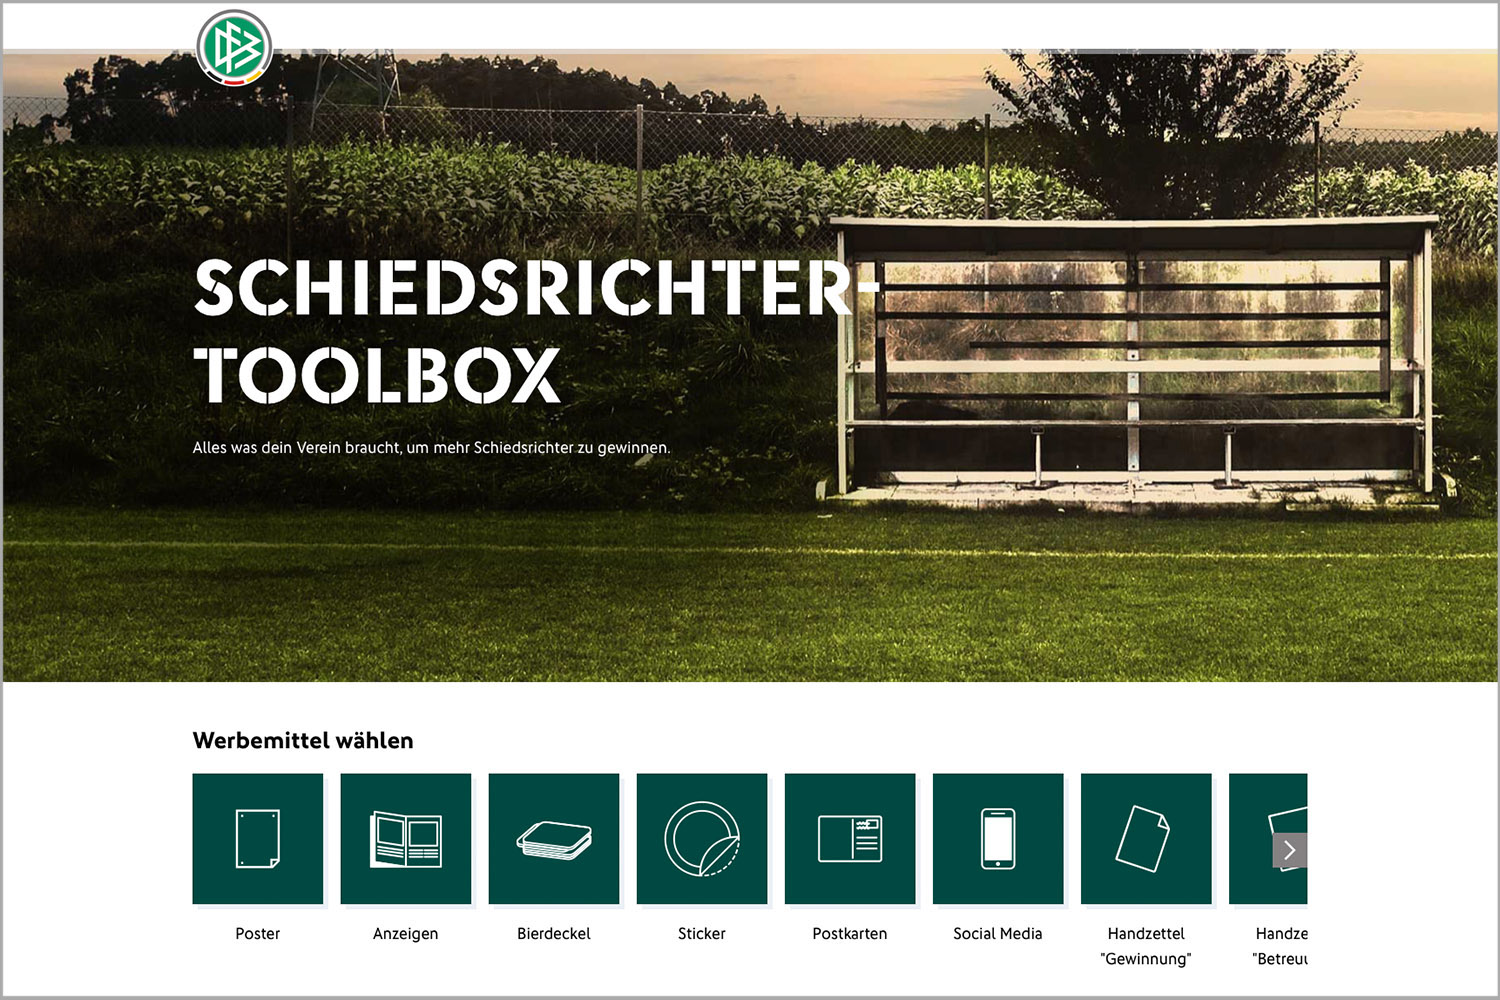 Die Schiedsrichter-Toolbox des DFB bietet moderne Werbemittel für alle Vereine. (Foto: Screenshot)